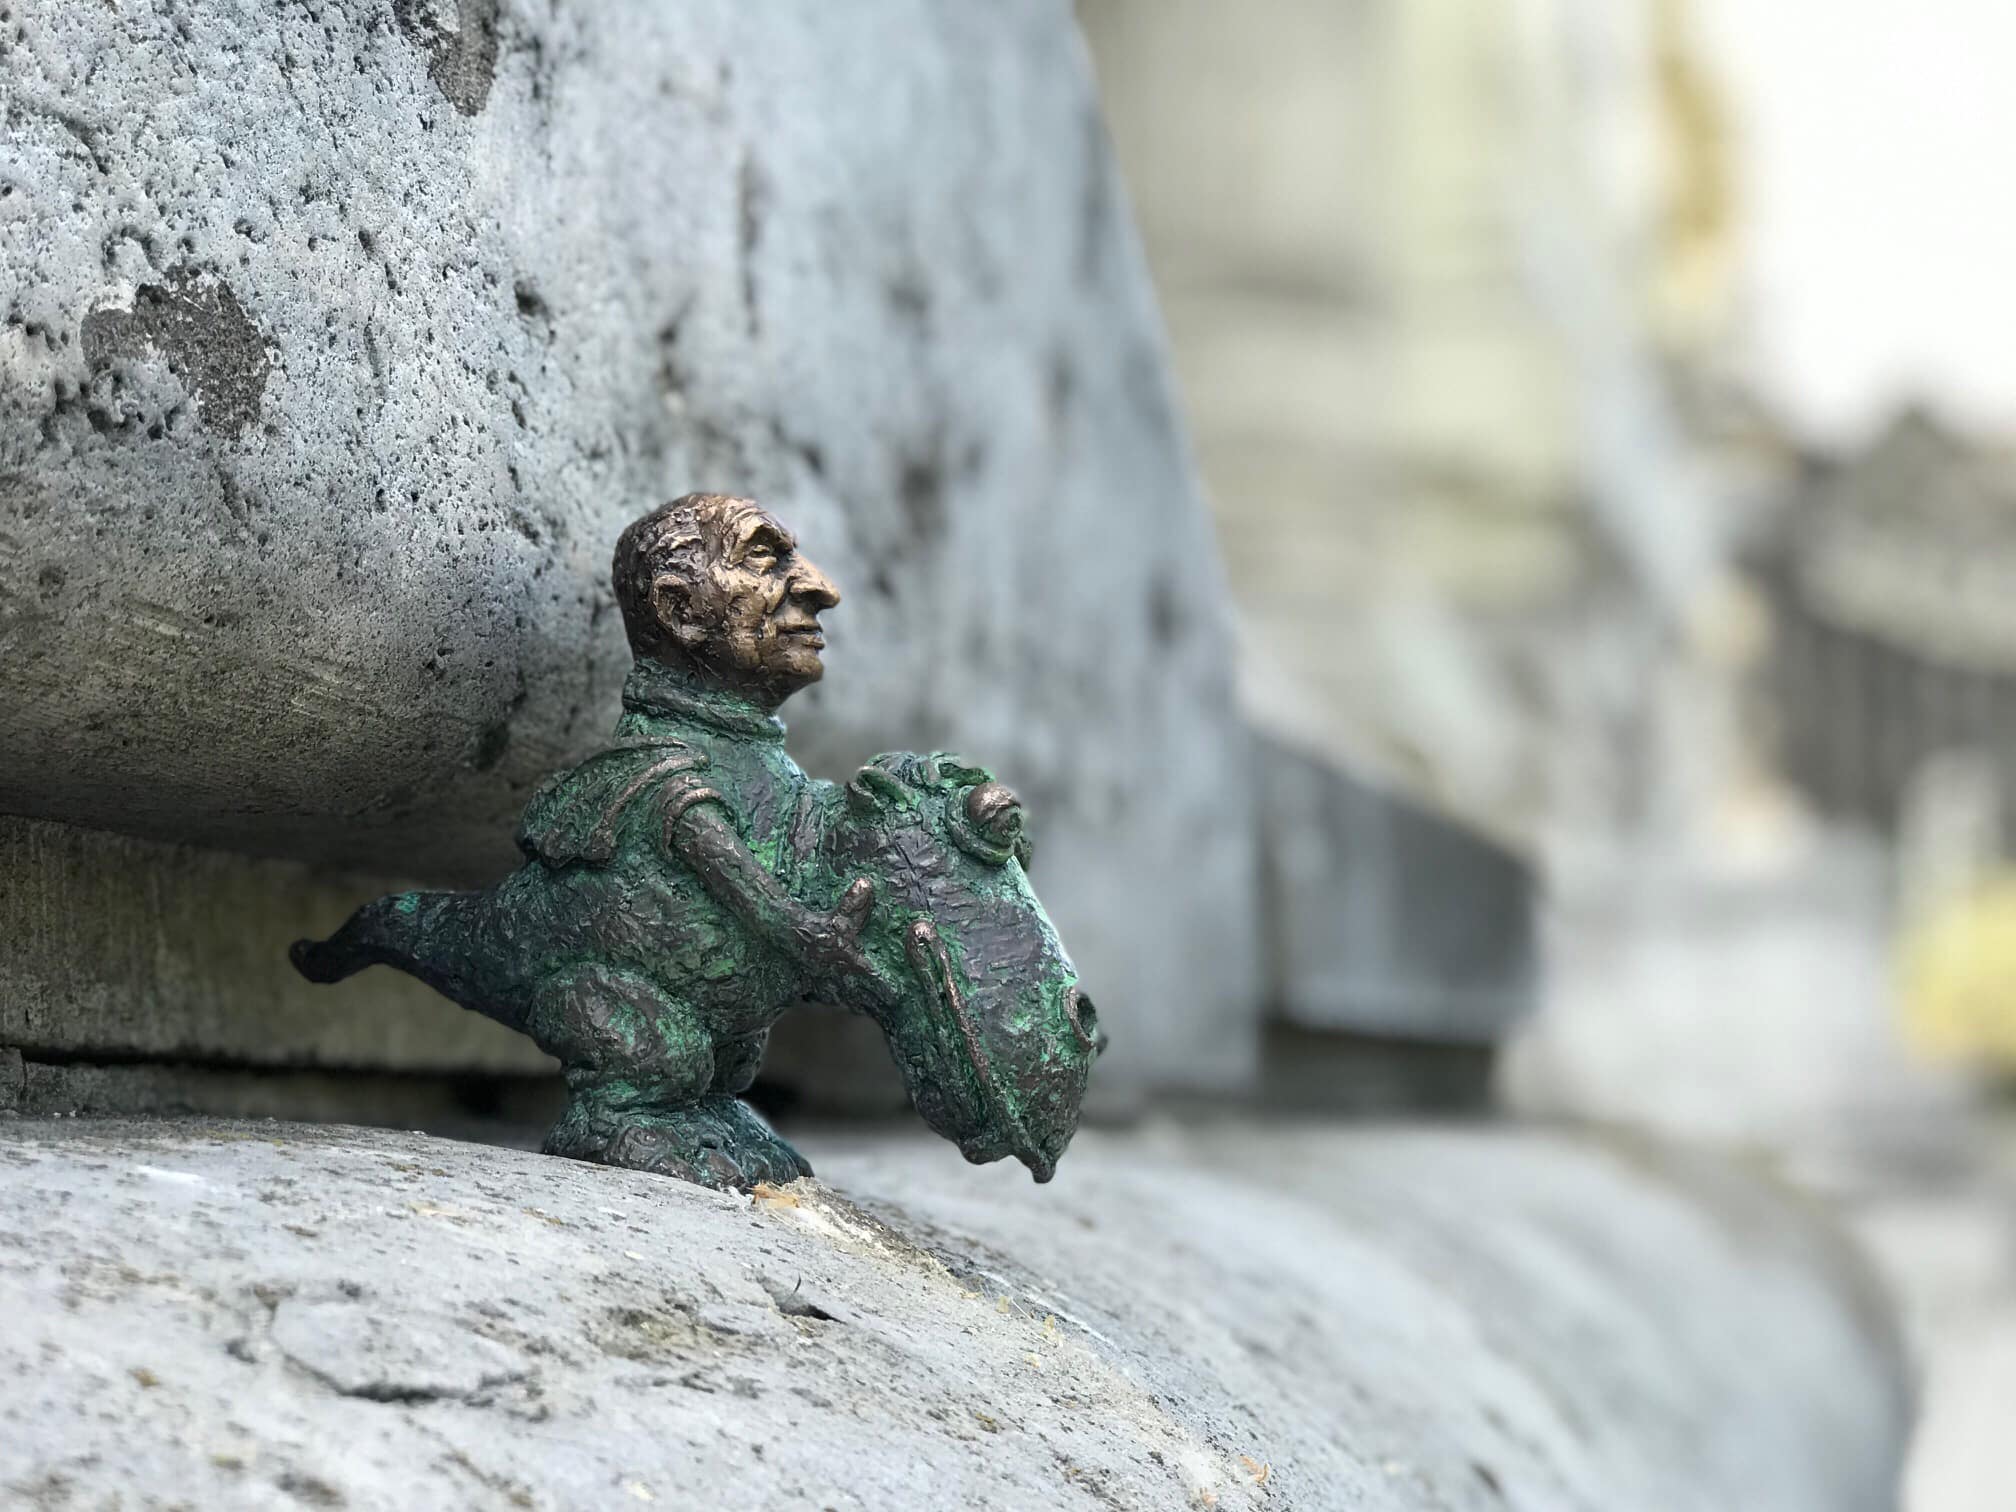 Bűbájos szobrocskával tisztelegnek Süsü, a sárkány előtt Budapesten - Blikk